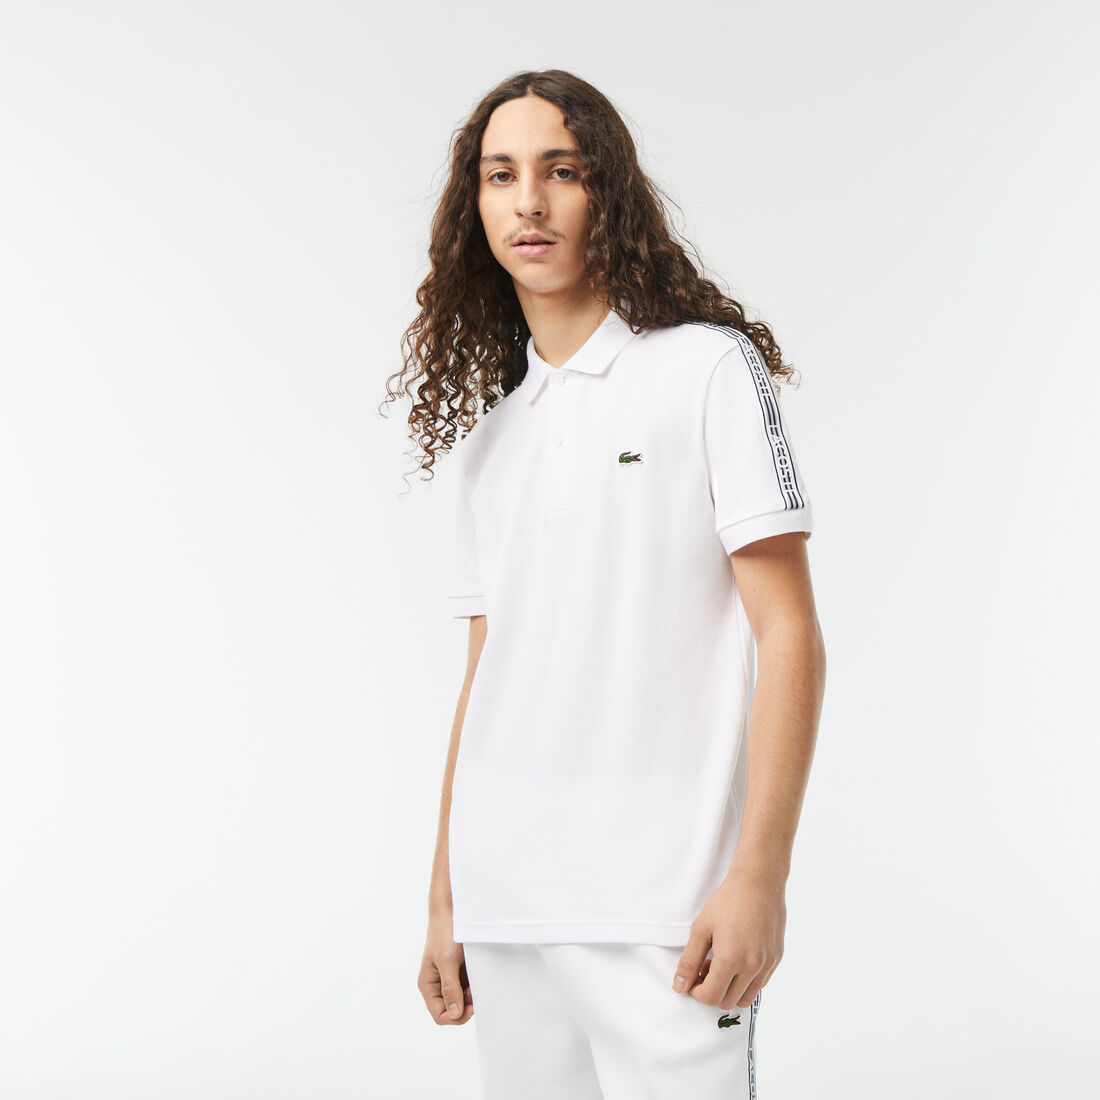 Men’s Lacoste Logo Stripe Piqué Polo Shirt